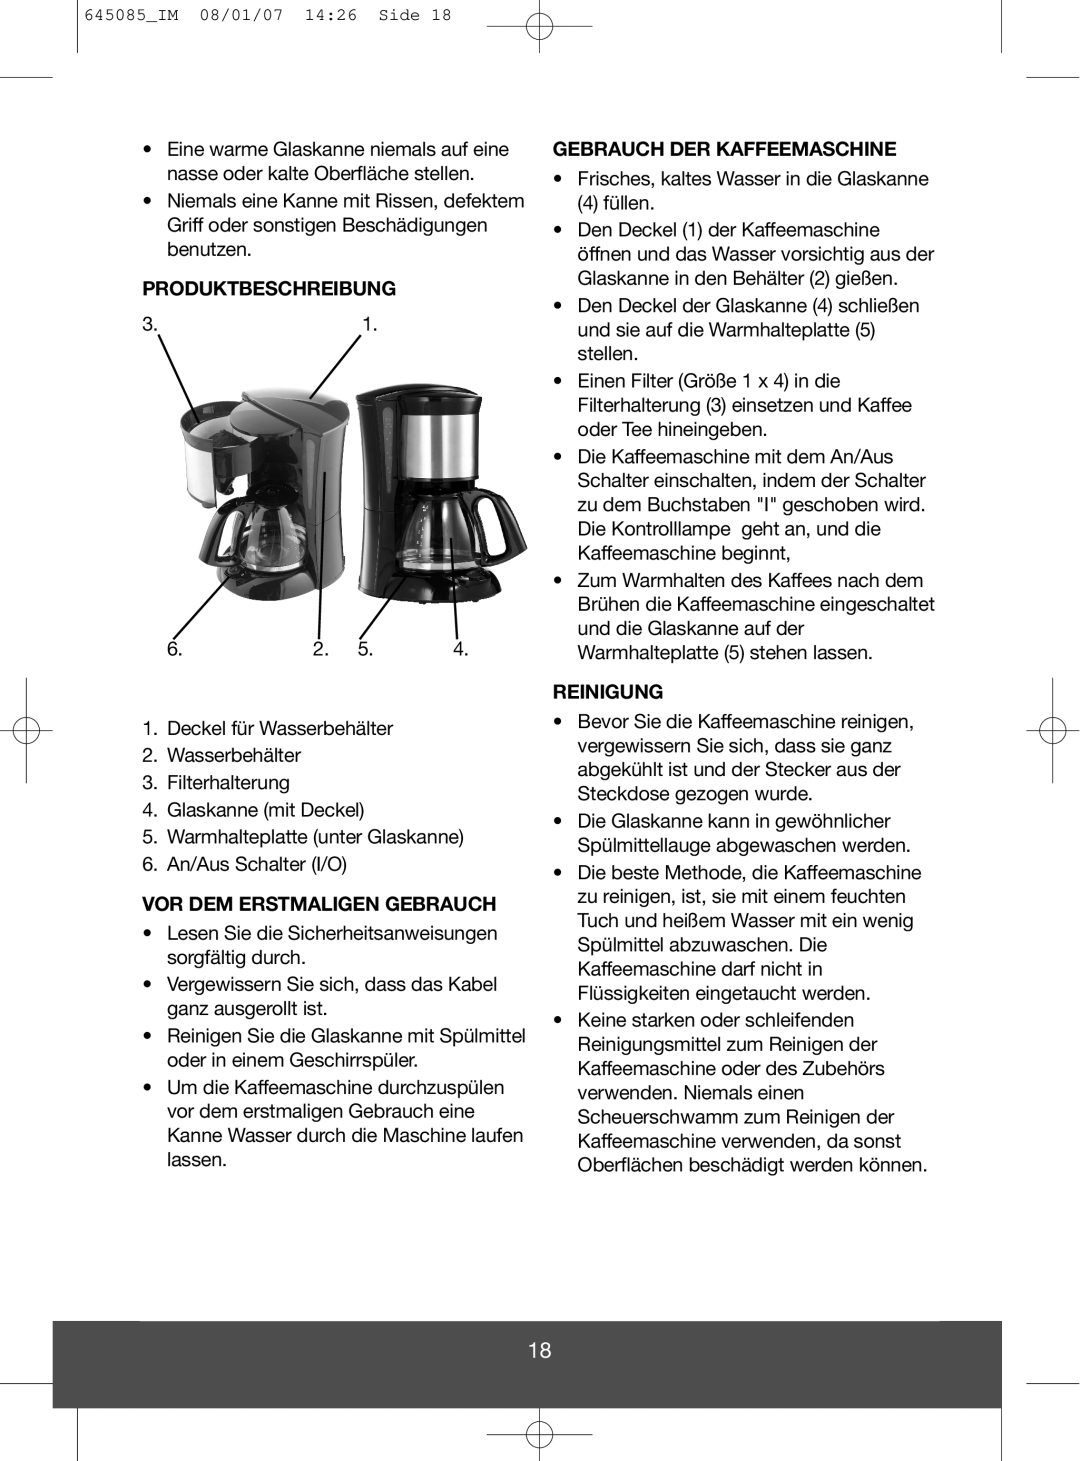 Butler 645-260 manual Produktbeschreibung, Vor Dem Erstmaligen Gebrauch, Gebrauch Der Kaffeemaschine, Reinigung 